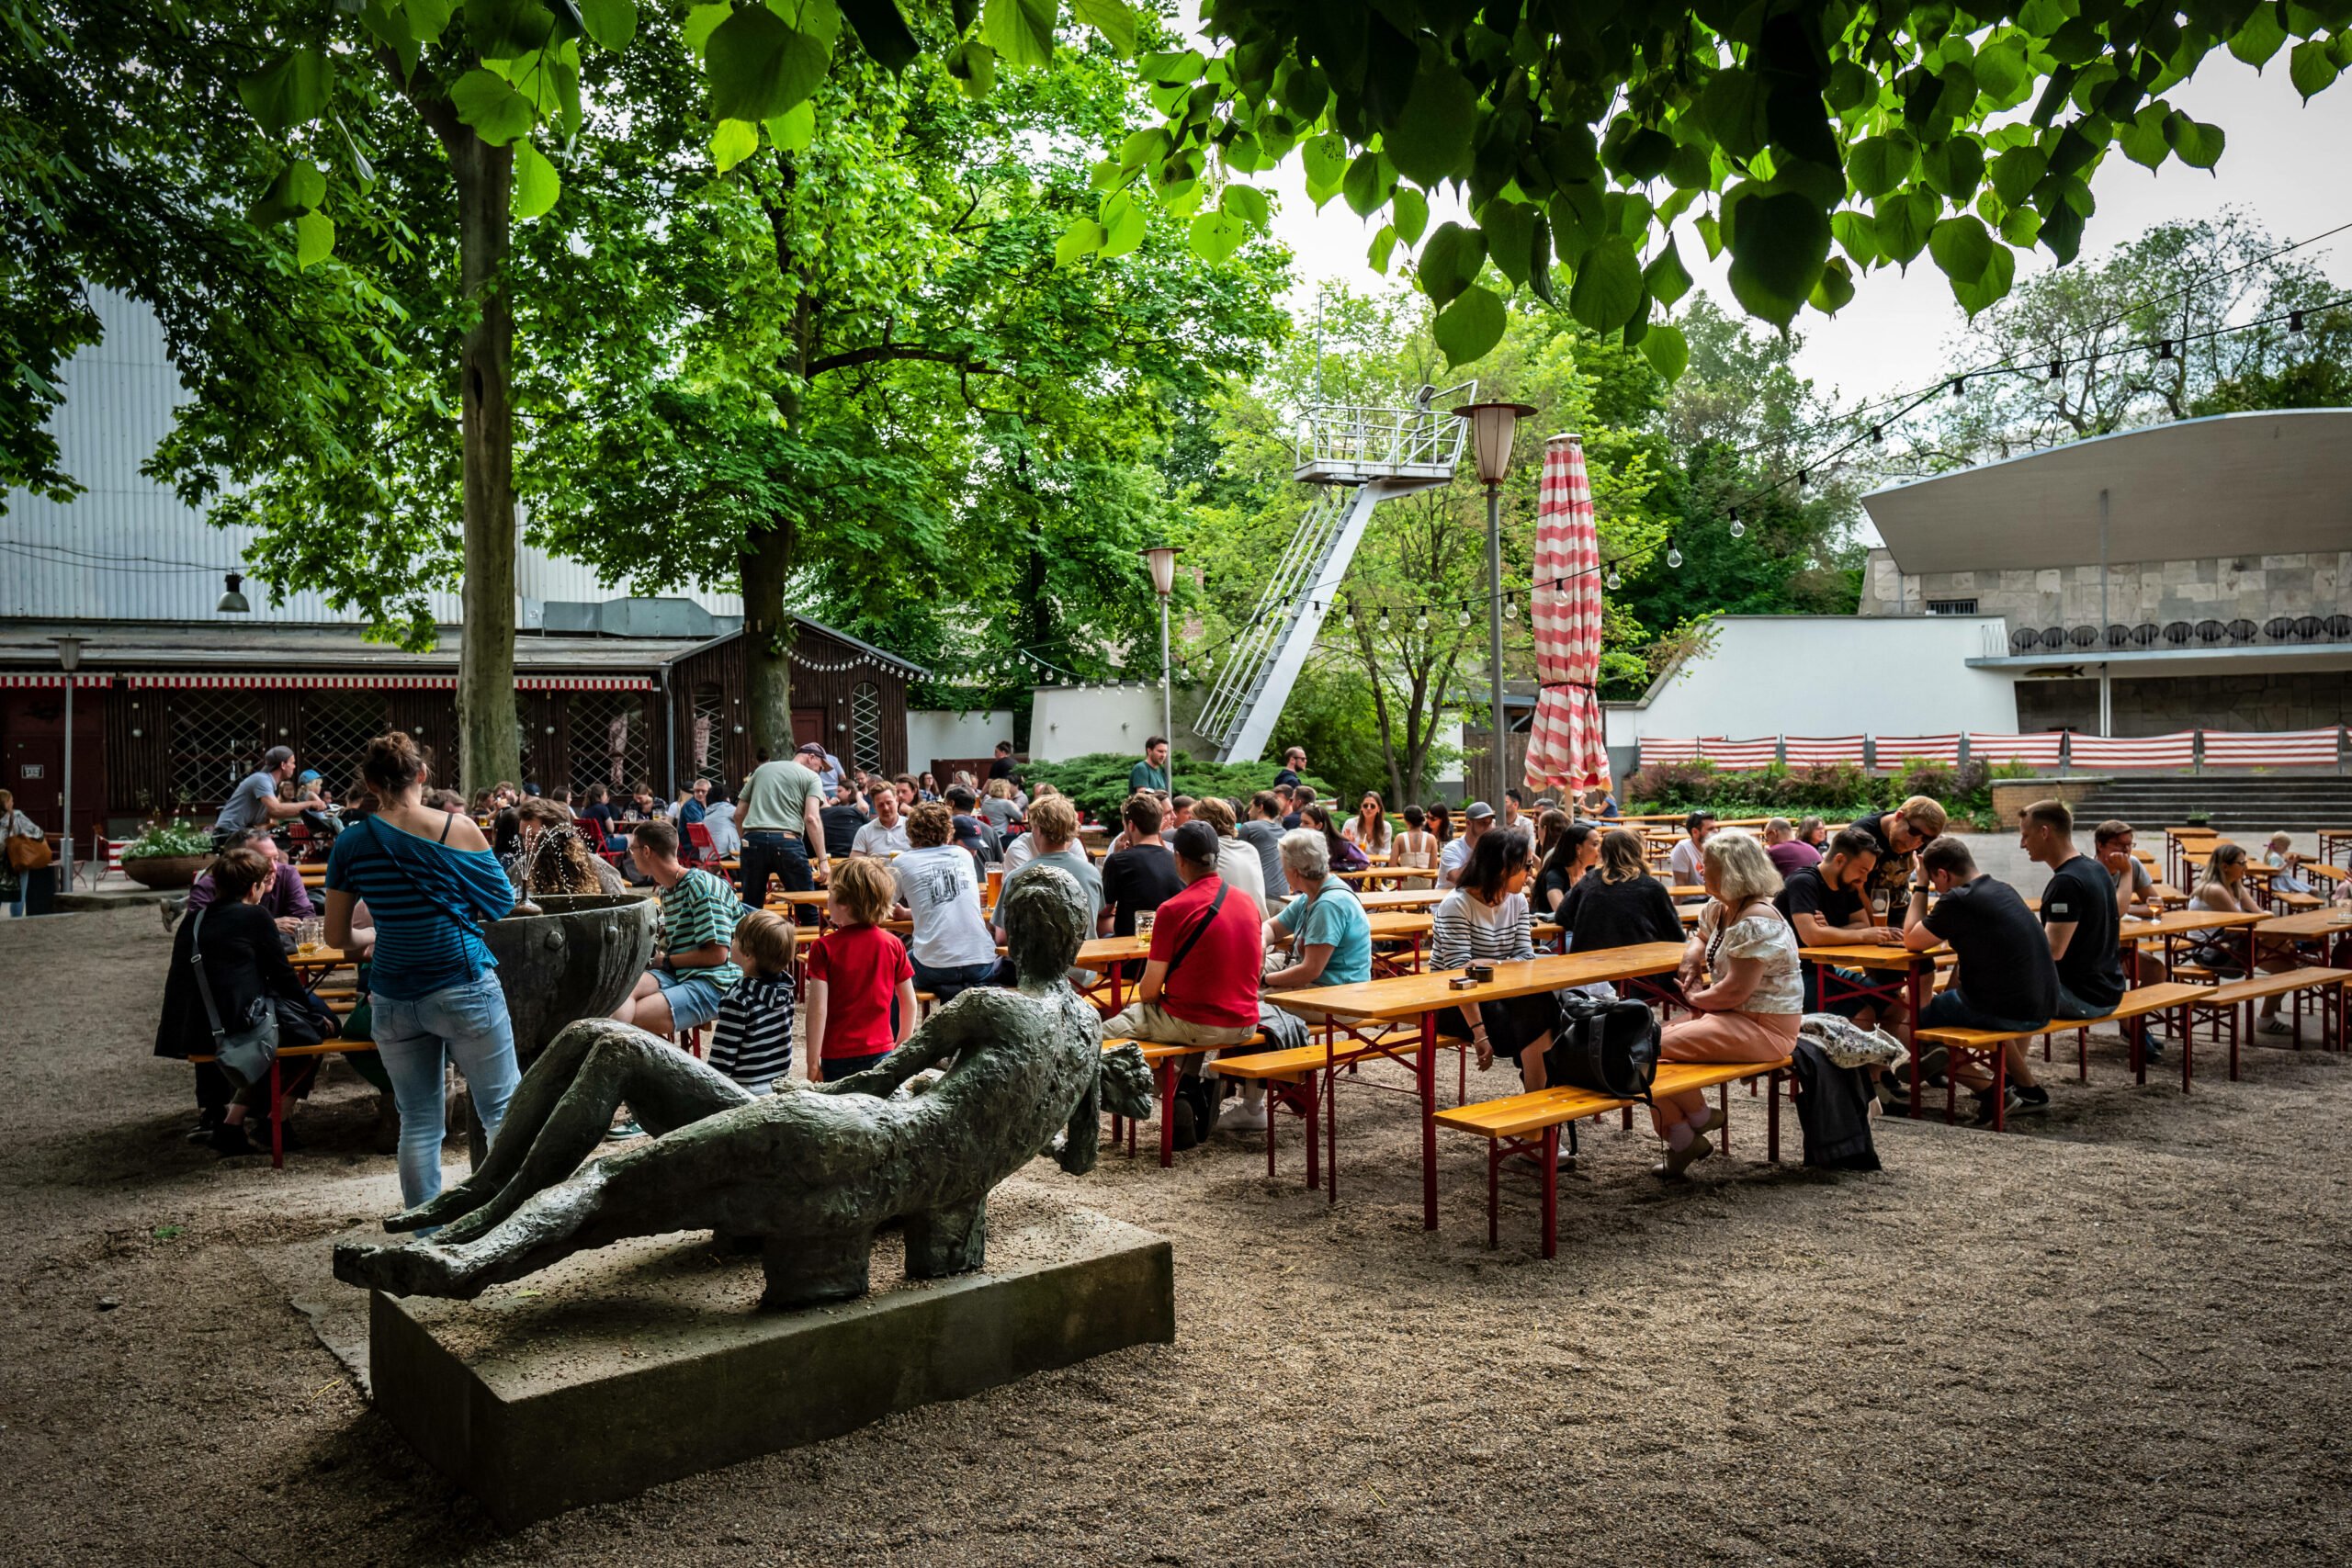 Der schöne Prater im Prenzlauer Berg ist ein Juwel unter den Biergärten in Berlin.